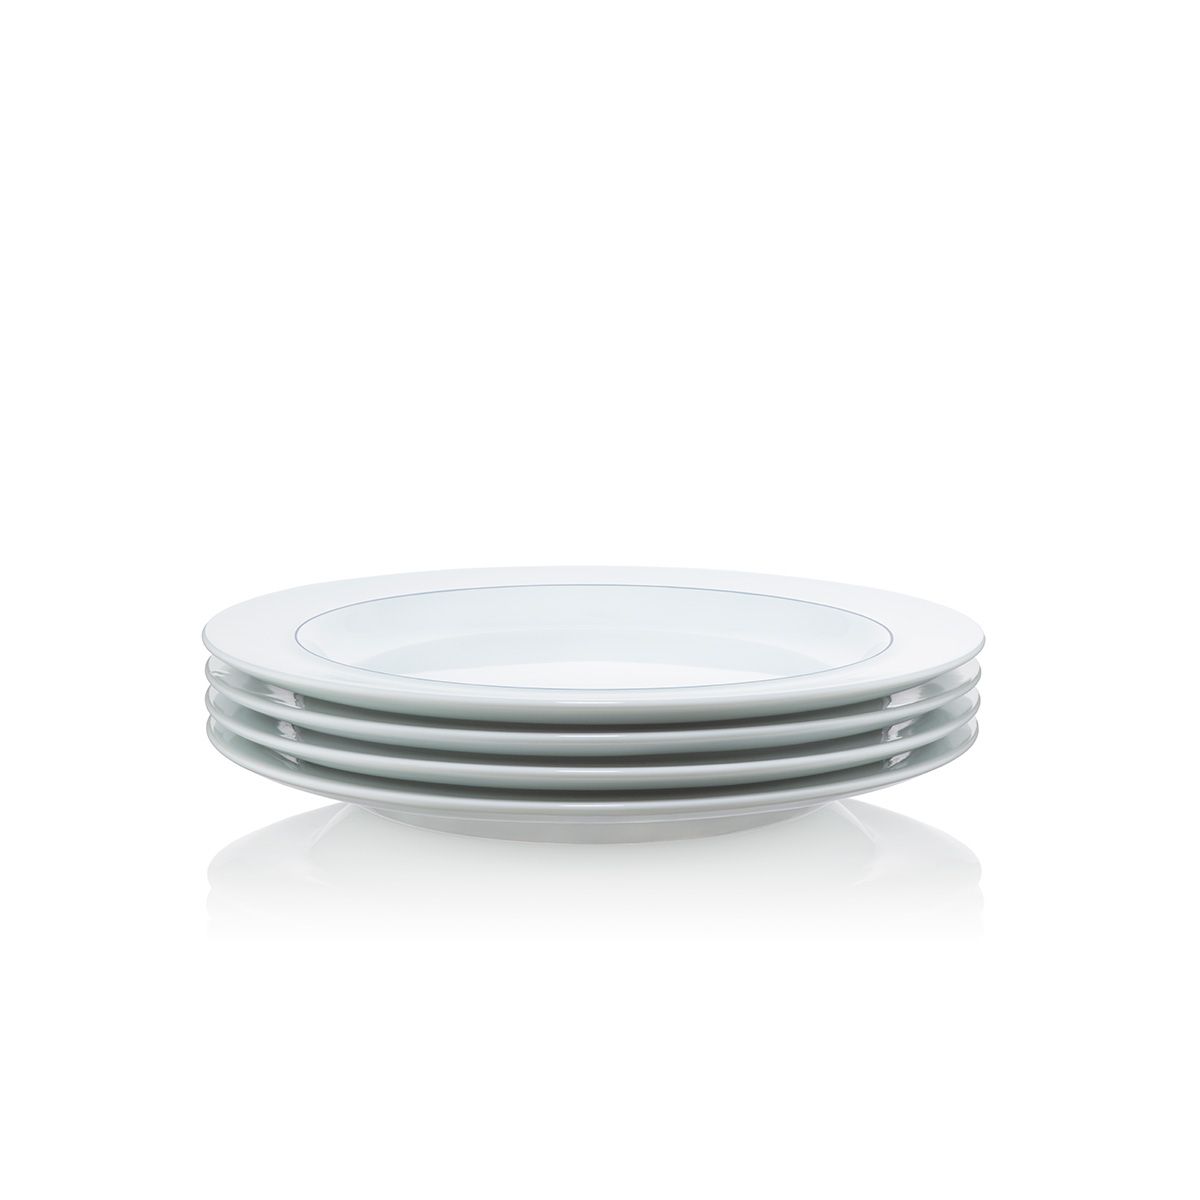 Bodum Blå Lunch Platel Porcelaine, 4 pcs.